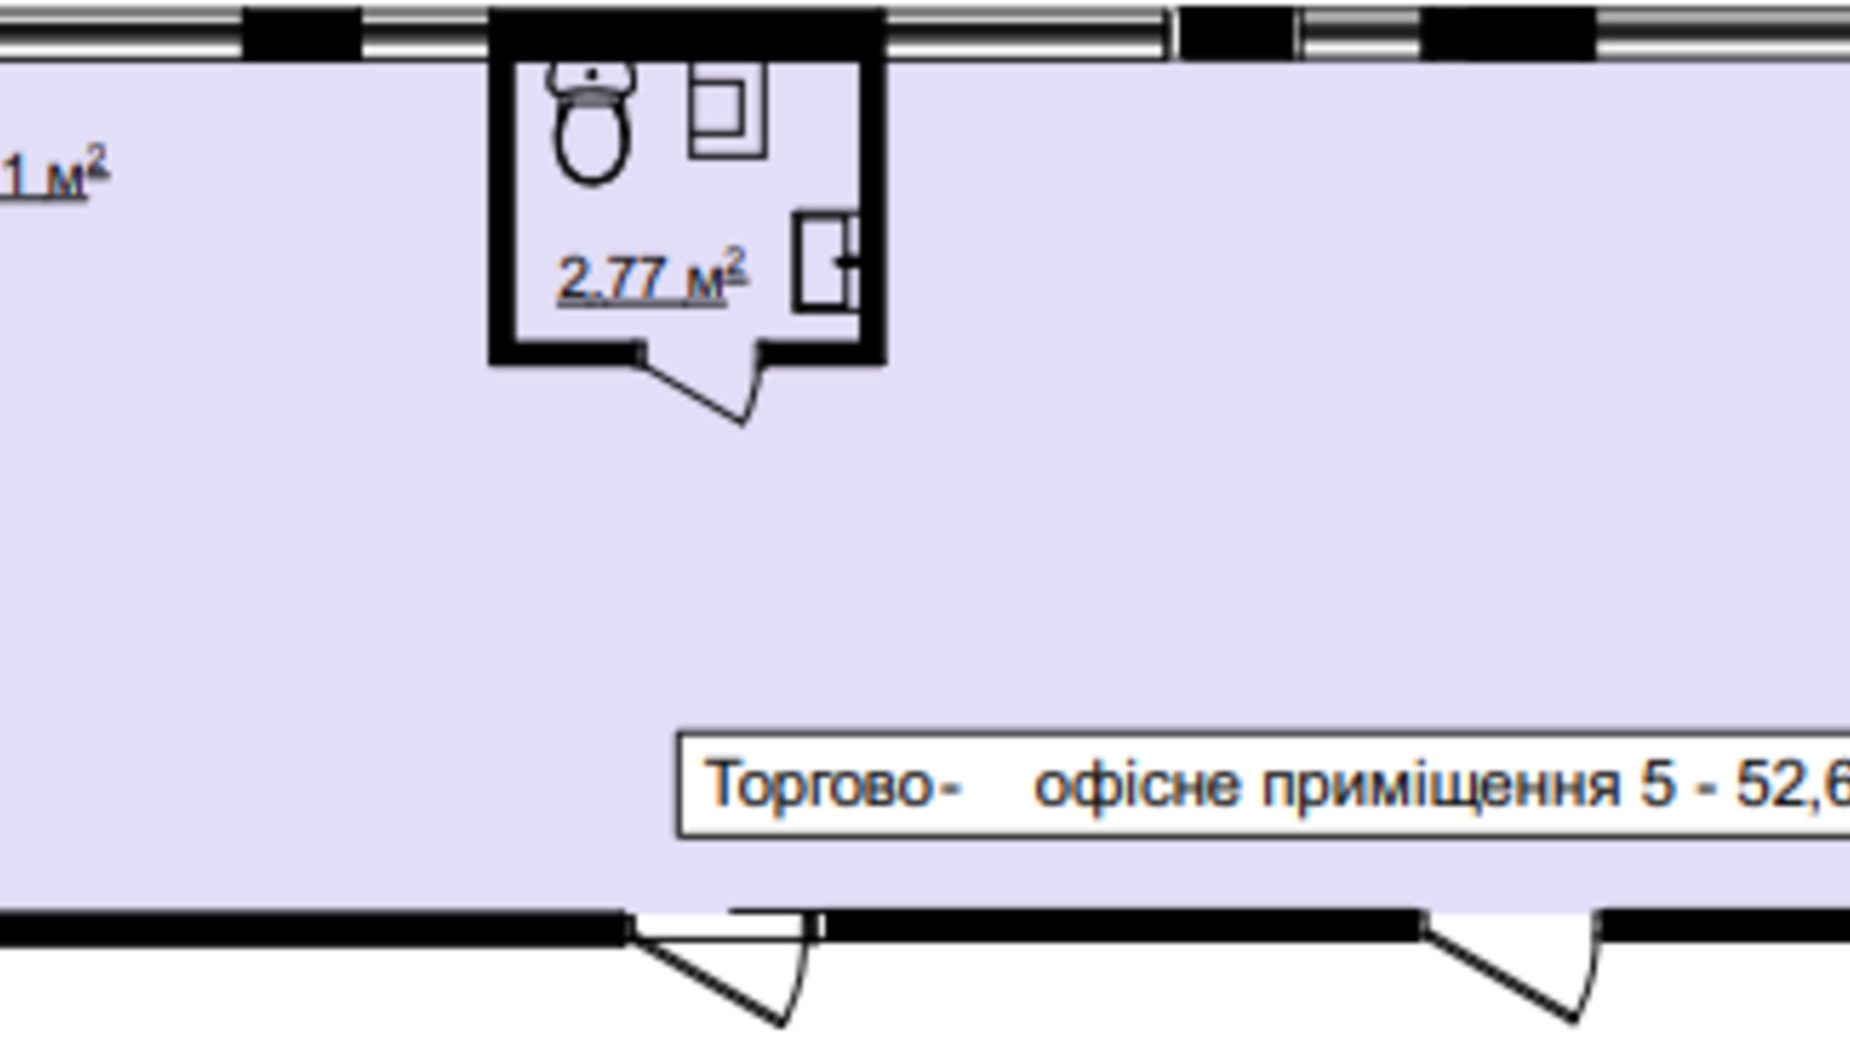 Планування приміщення в ЖК На Острозького 52.68 м², фото 618136